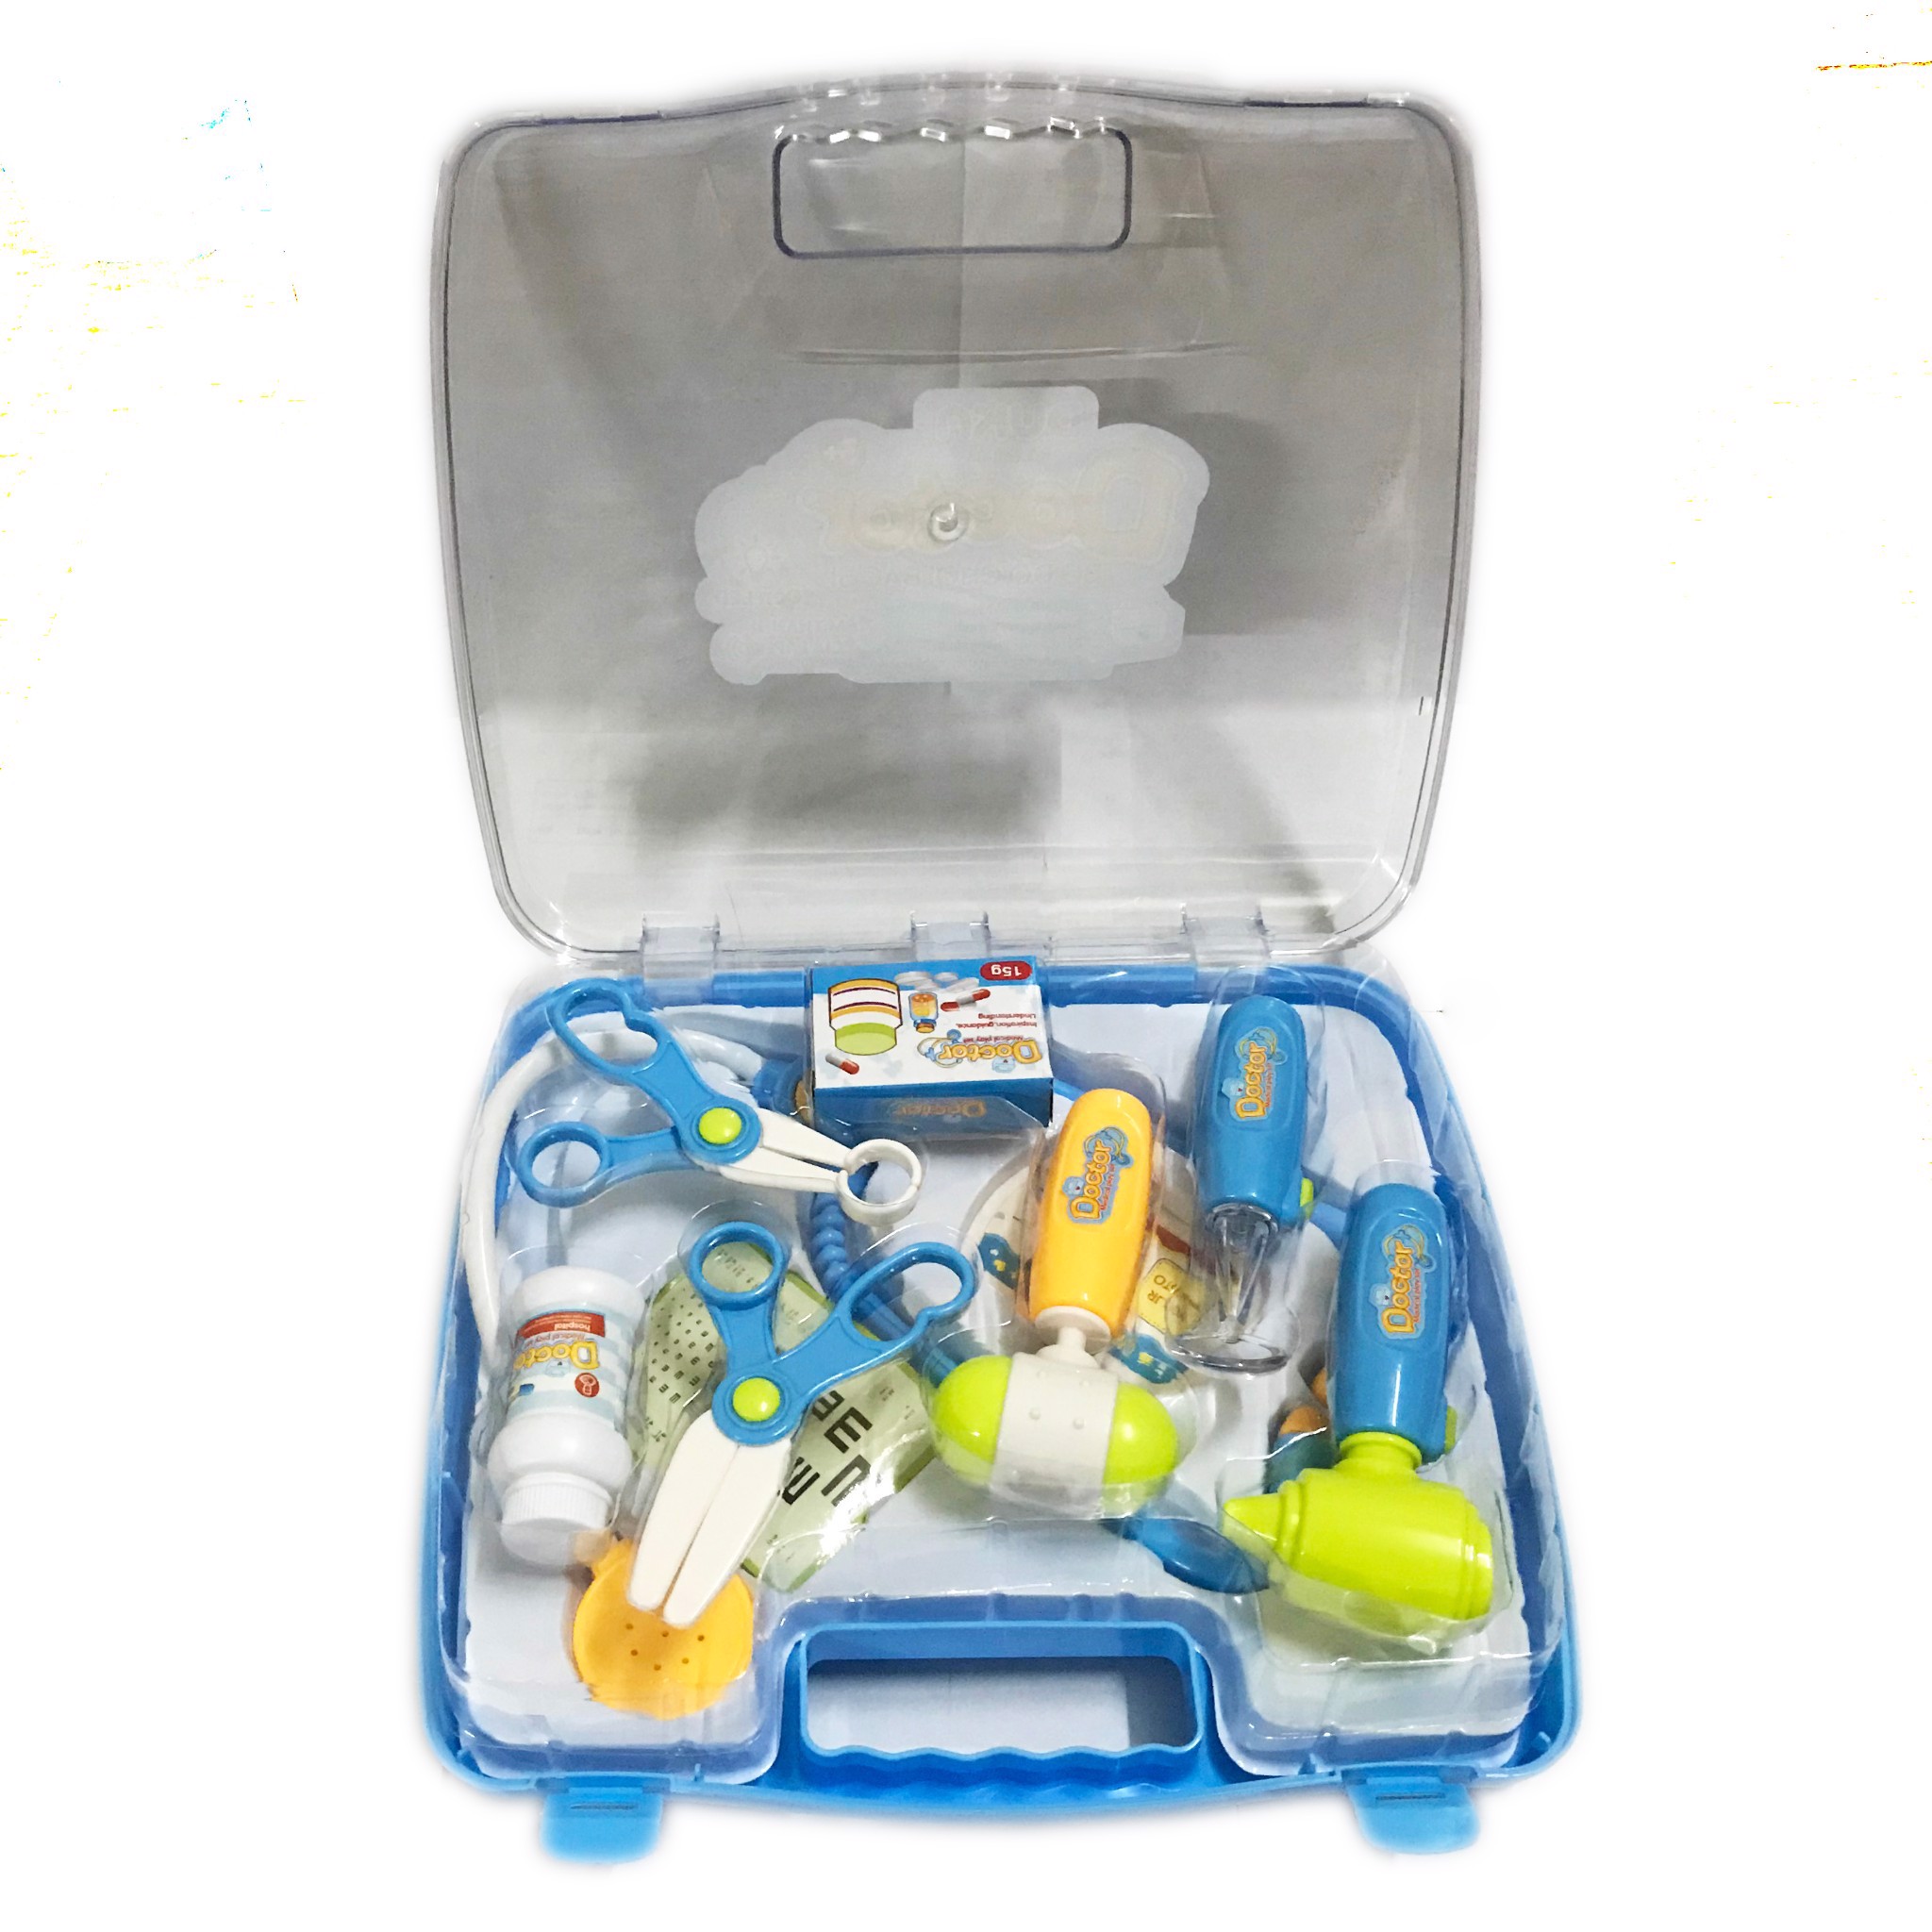 Bộ đồ chơi bác sĩ - Màu xanh có đèn báo (Quai xách vuông) 660-08